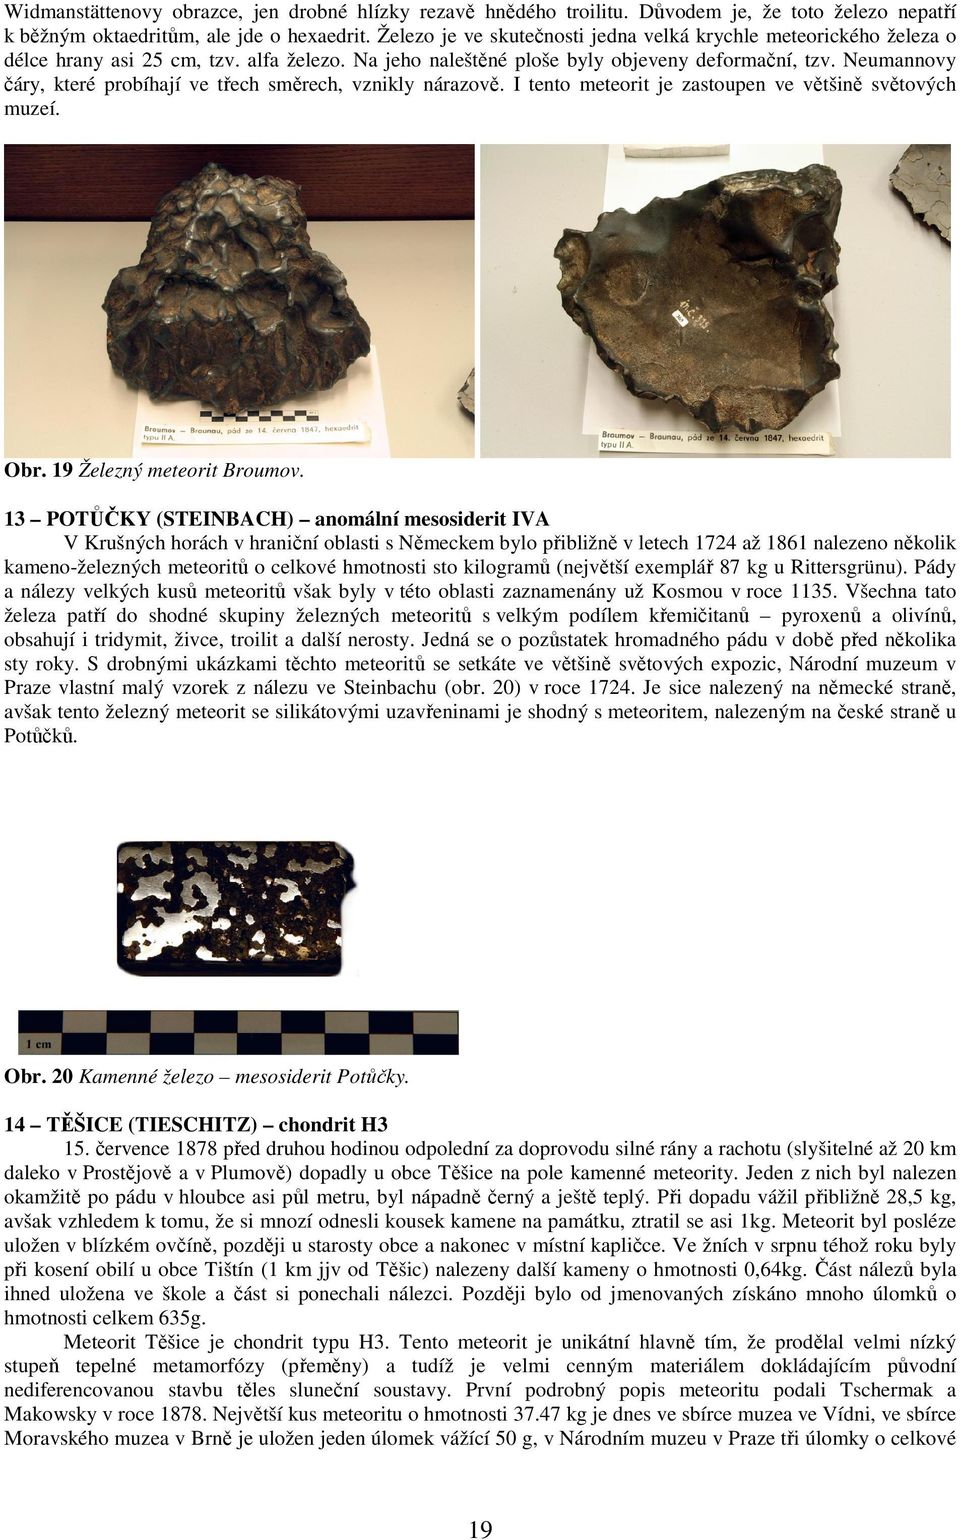 Neumannovy čáry, které probíhají ve třech směrech, vznikly nárazově. I tento meteorit je zastoupen ve většině světových muzeí. Obr. 19 Železný meteorit Broumov.